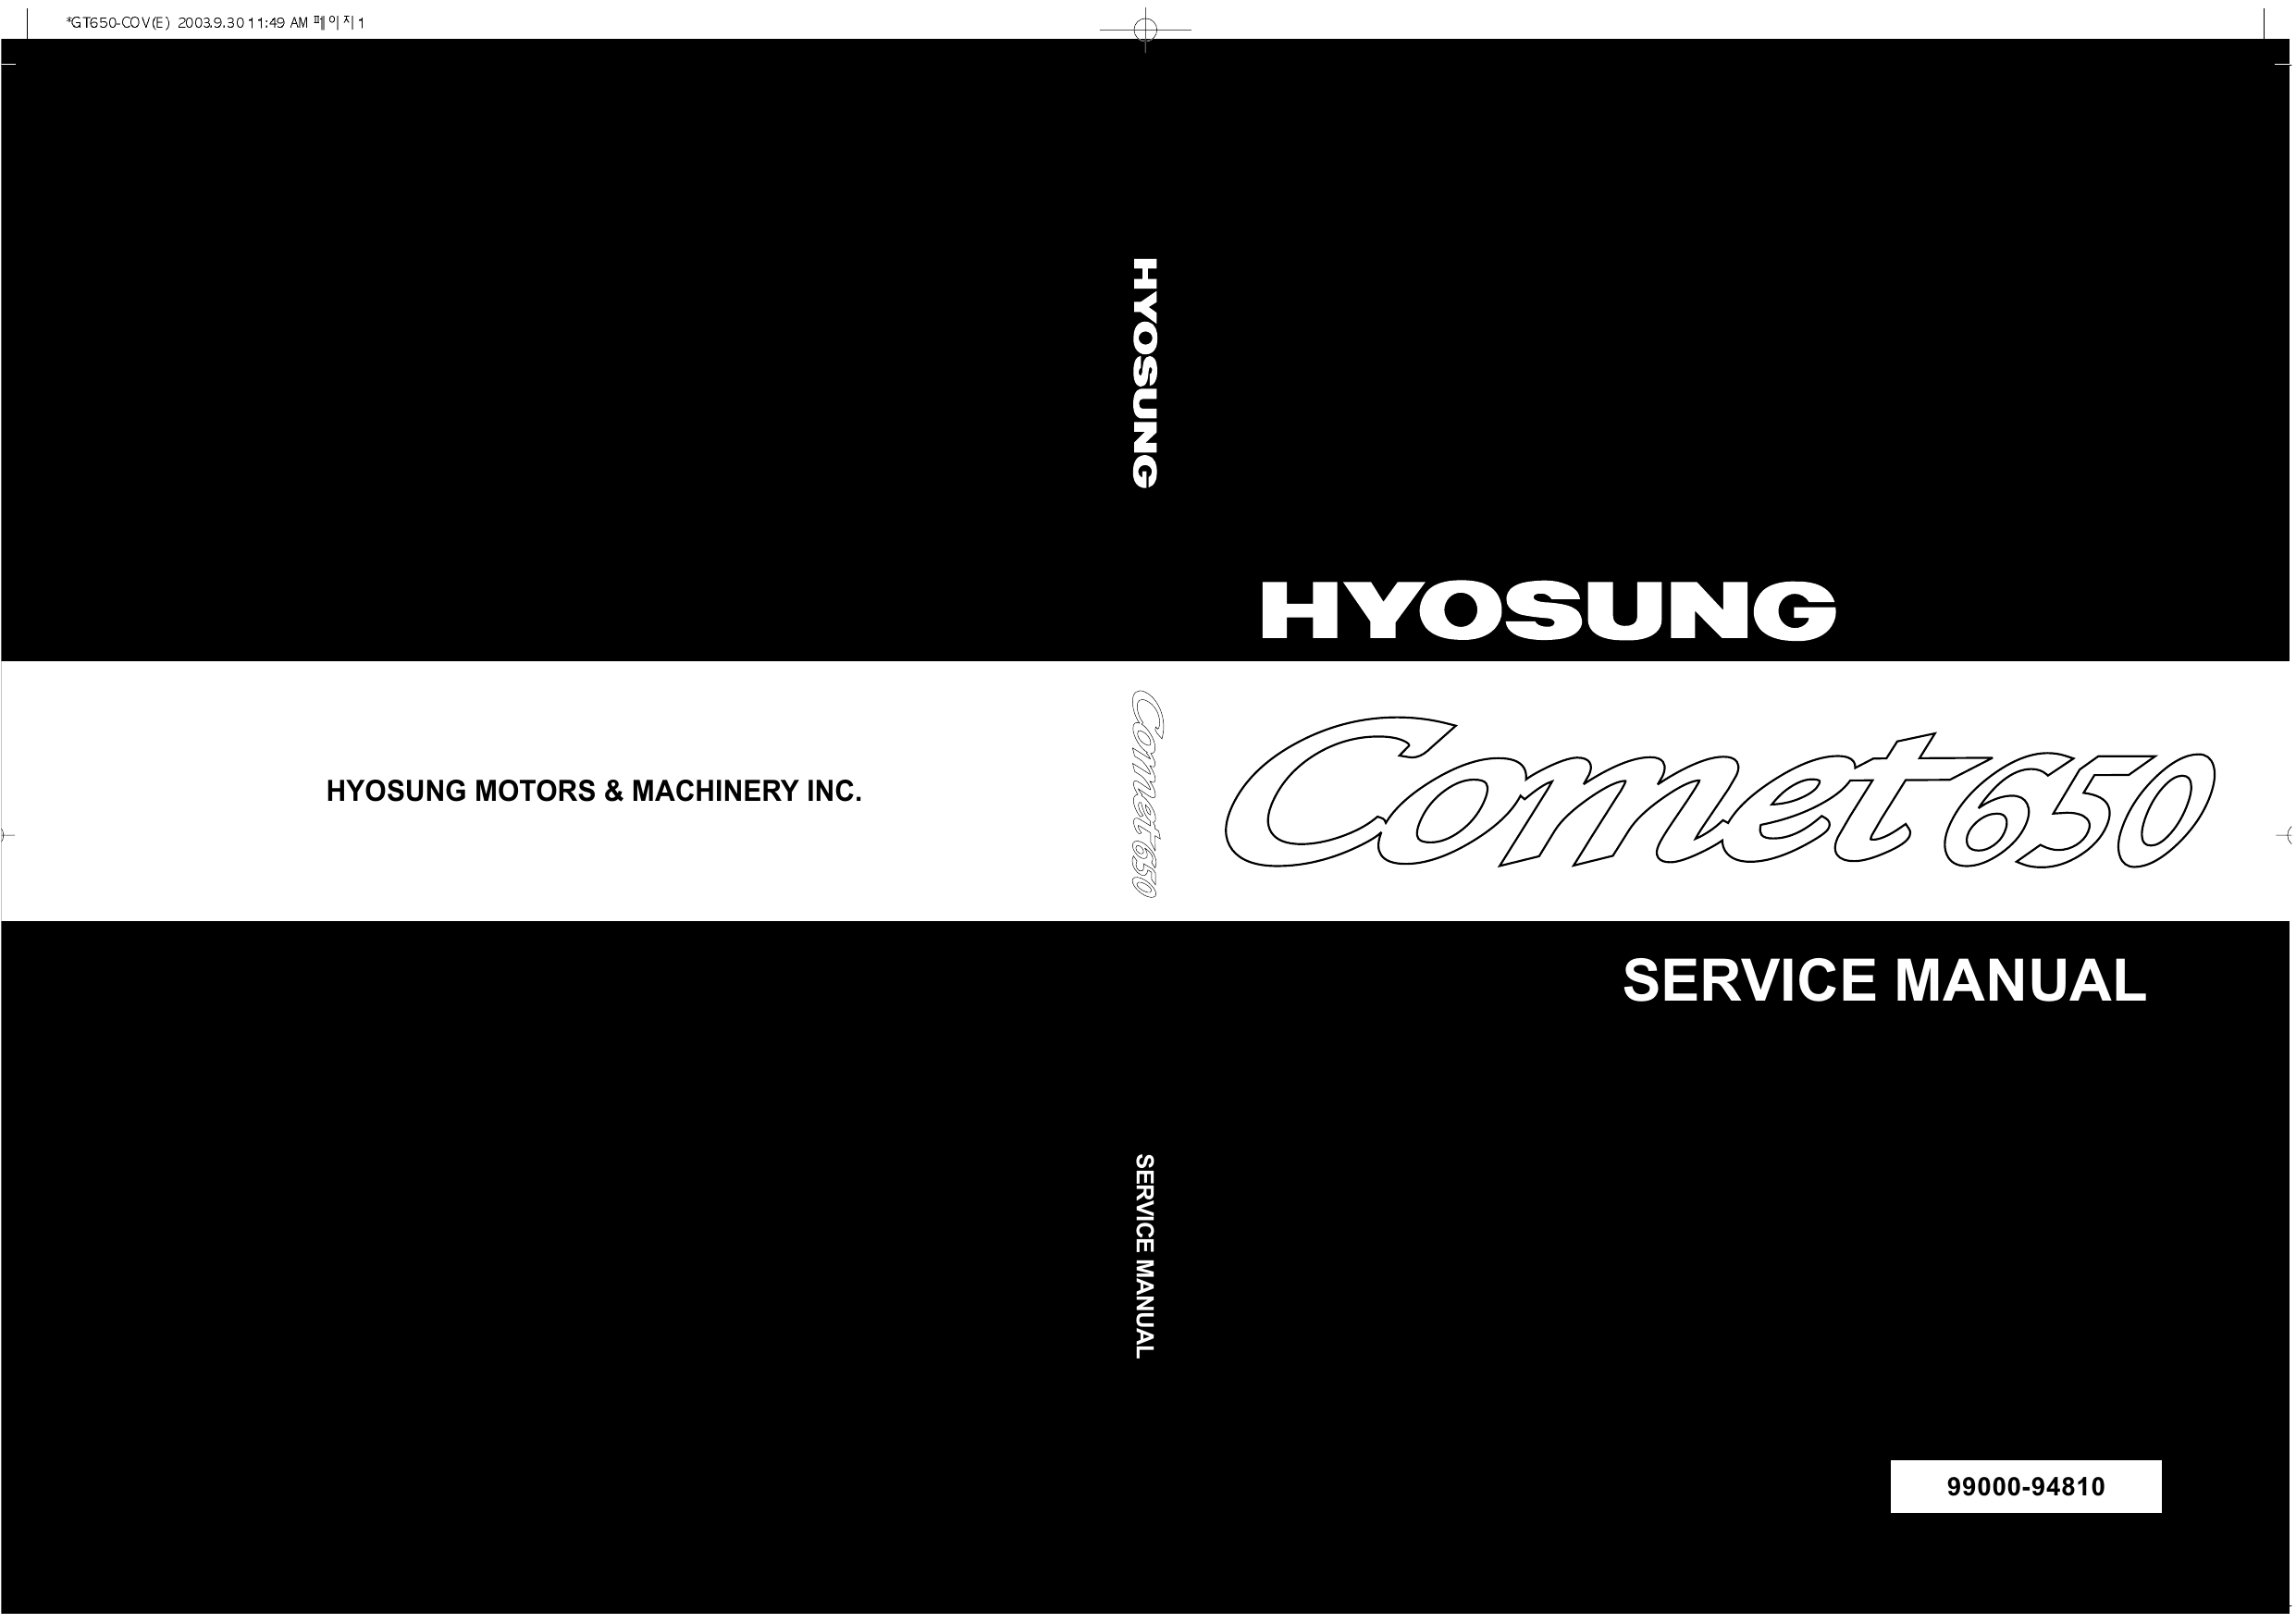 Hyosung Comet GT 650 repair manual Preview image 1